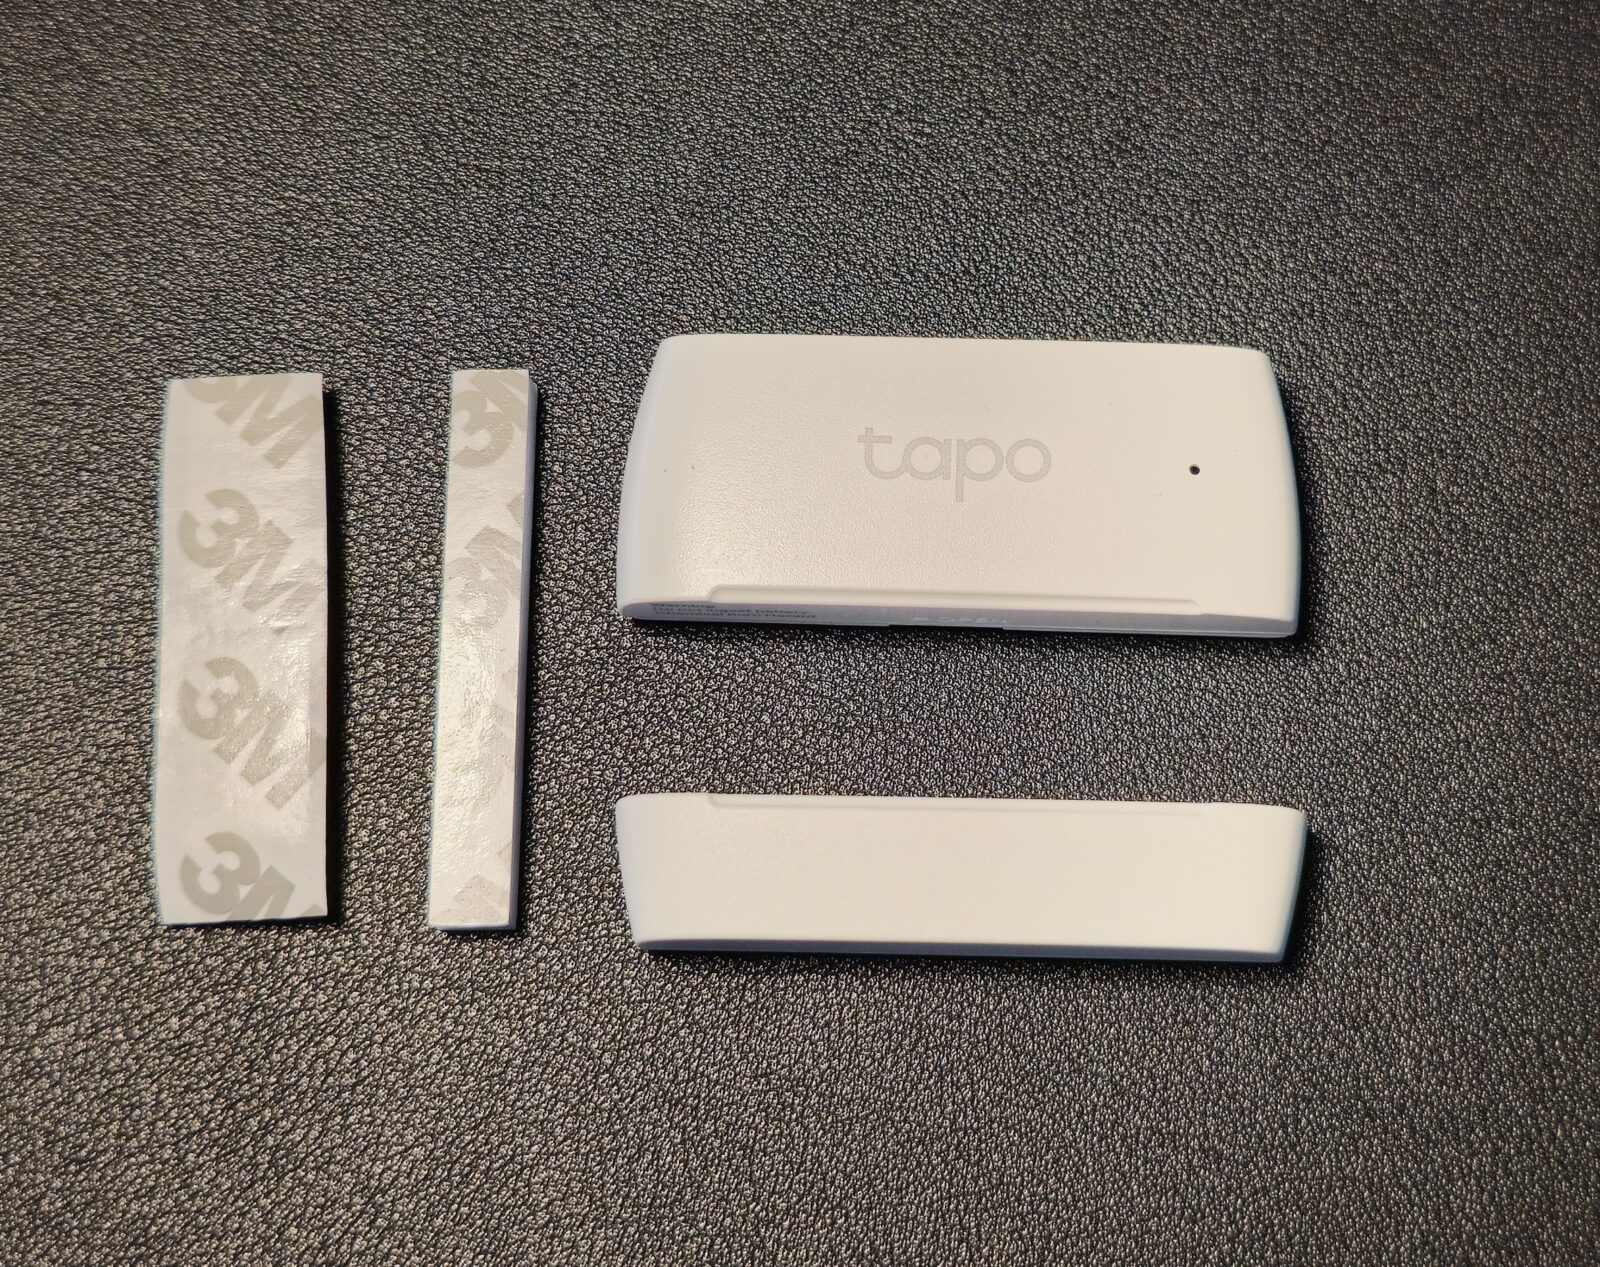 スマート接触センサー Tapo T110